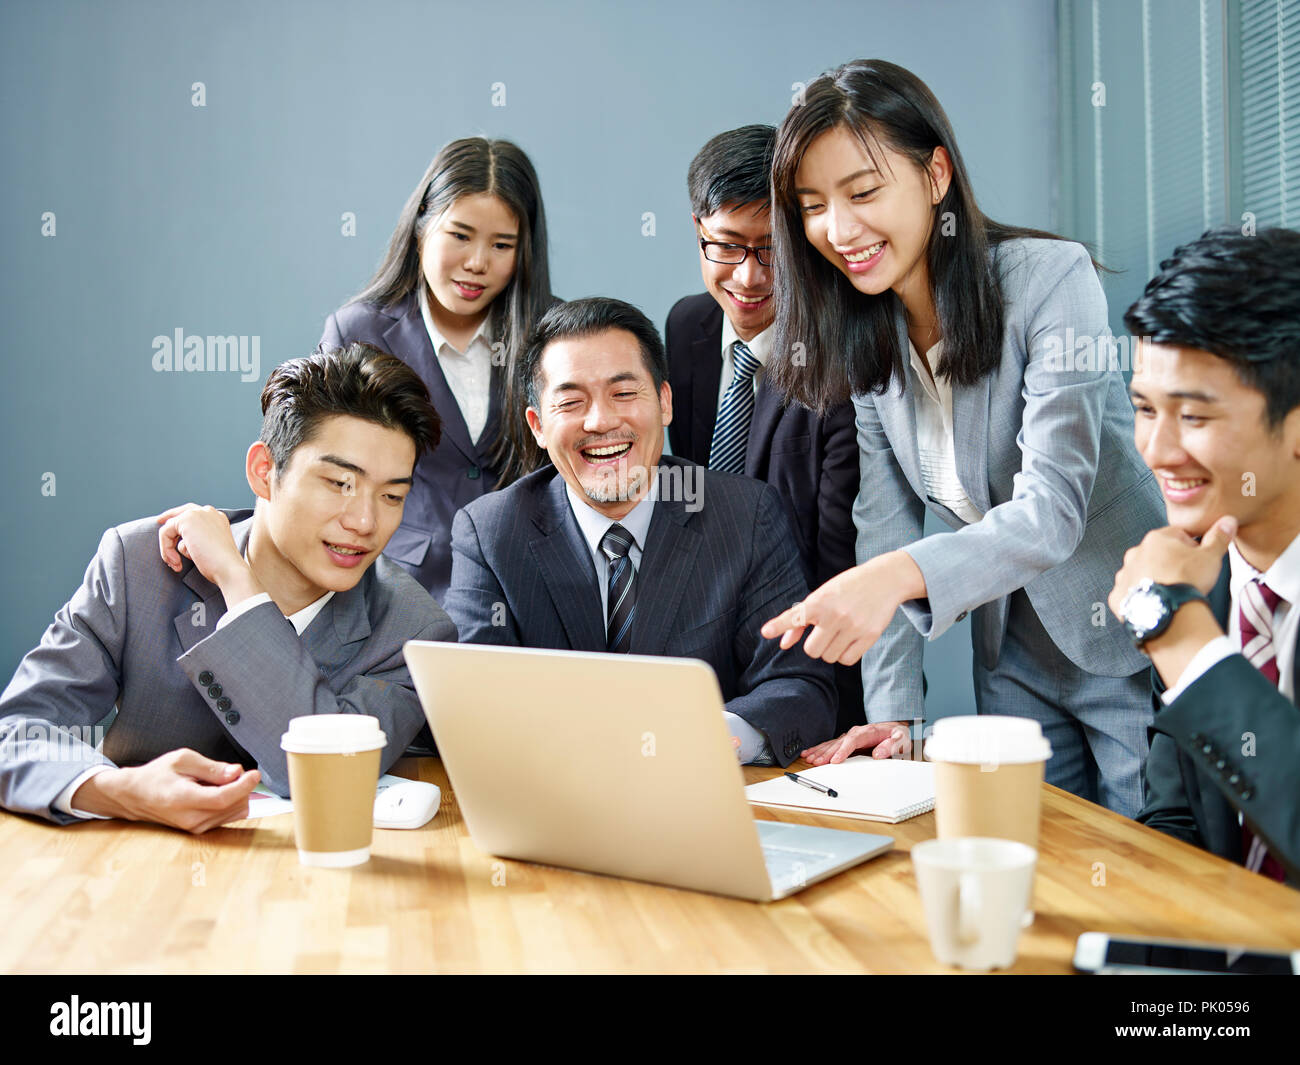 Ein Team von asiatischen Führungskräfte mit Laptop arbeiten zusammen im Büro, glücklich und lächelnd. Stockfoto